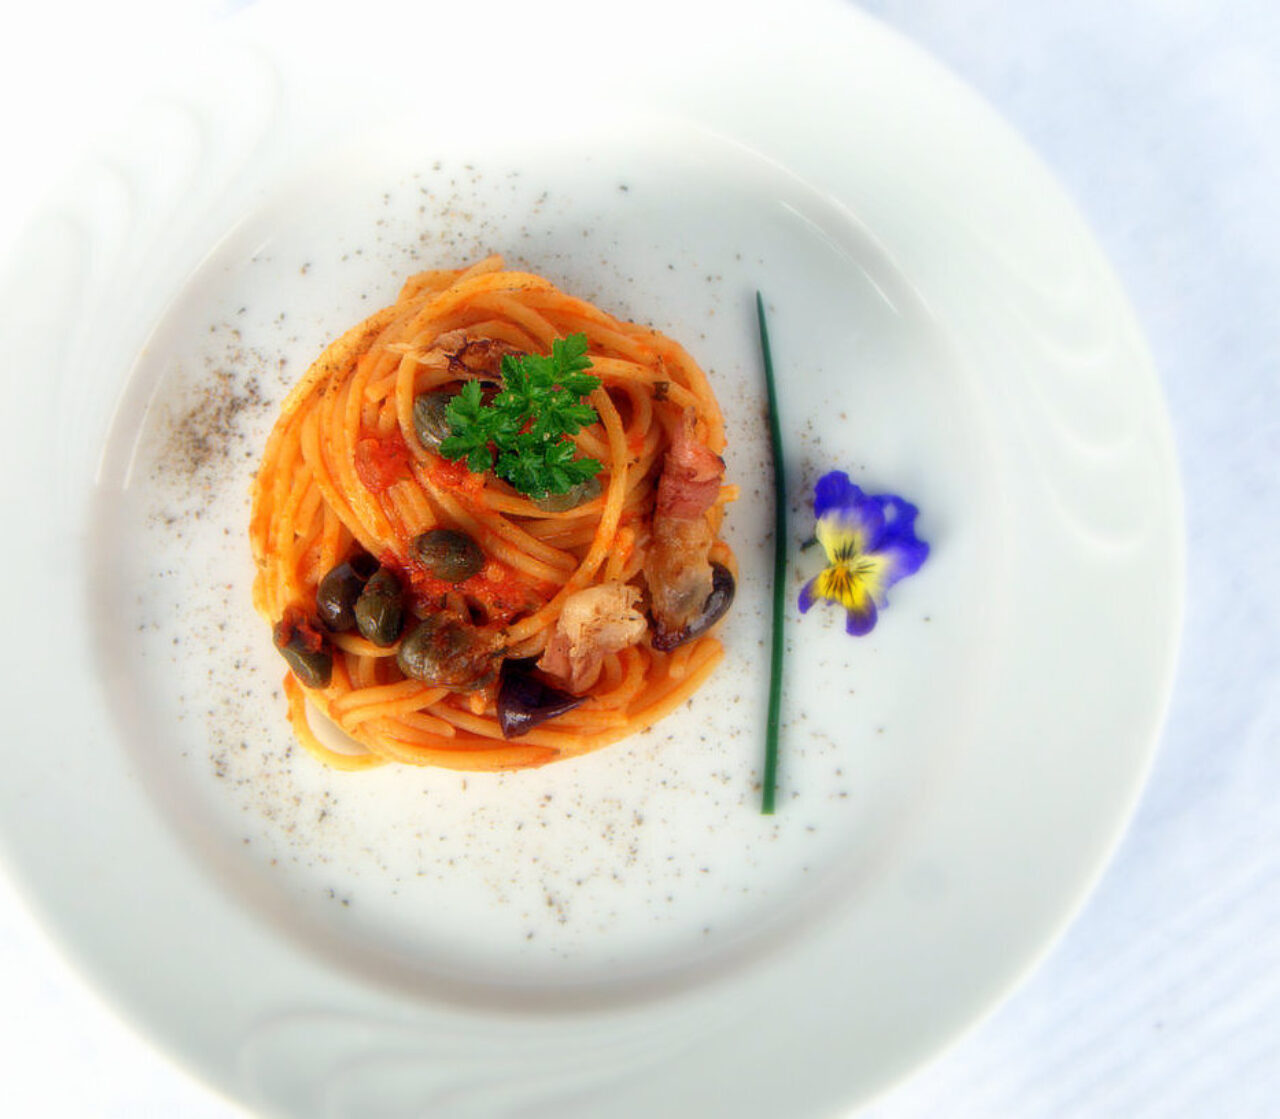 Spaghetti al pomodoro con guanciale croccante, olive taggiasche e capperi